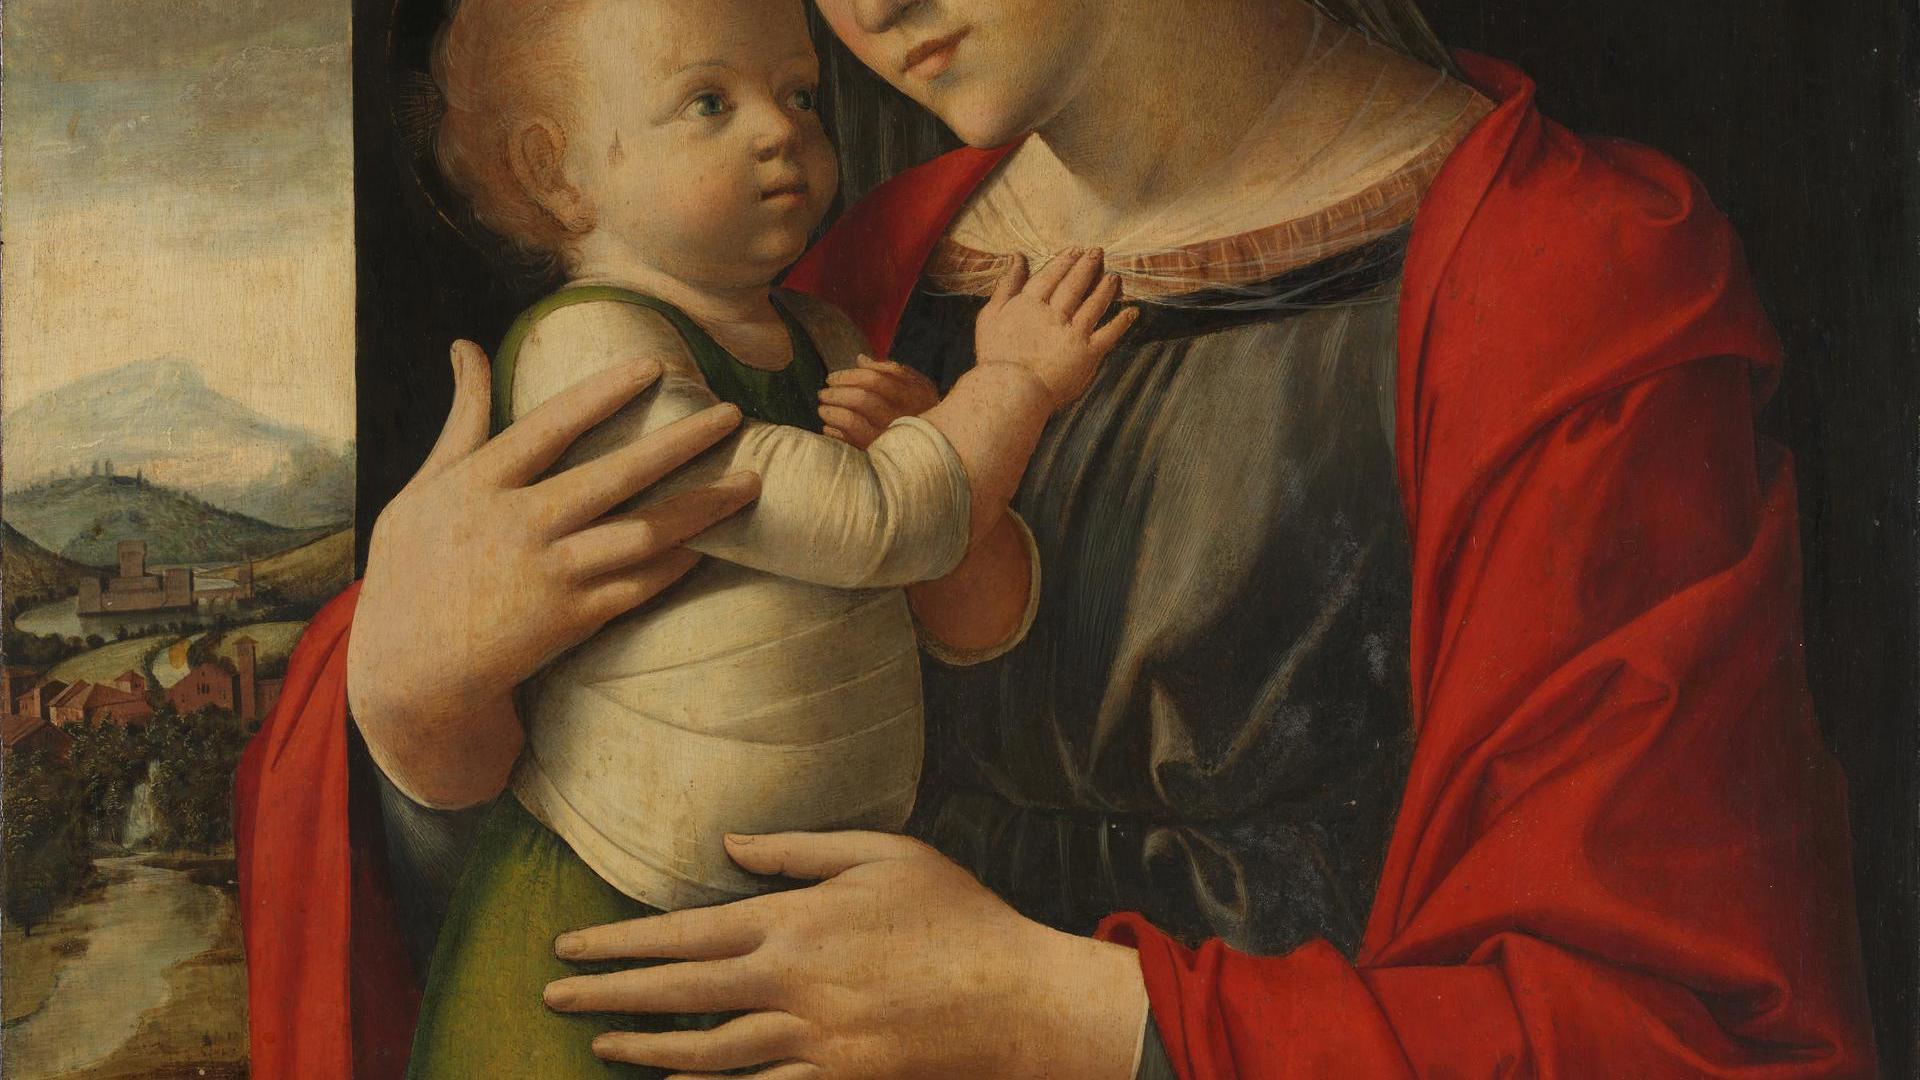 Virgin and Child by Alvise Vivarini